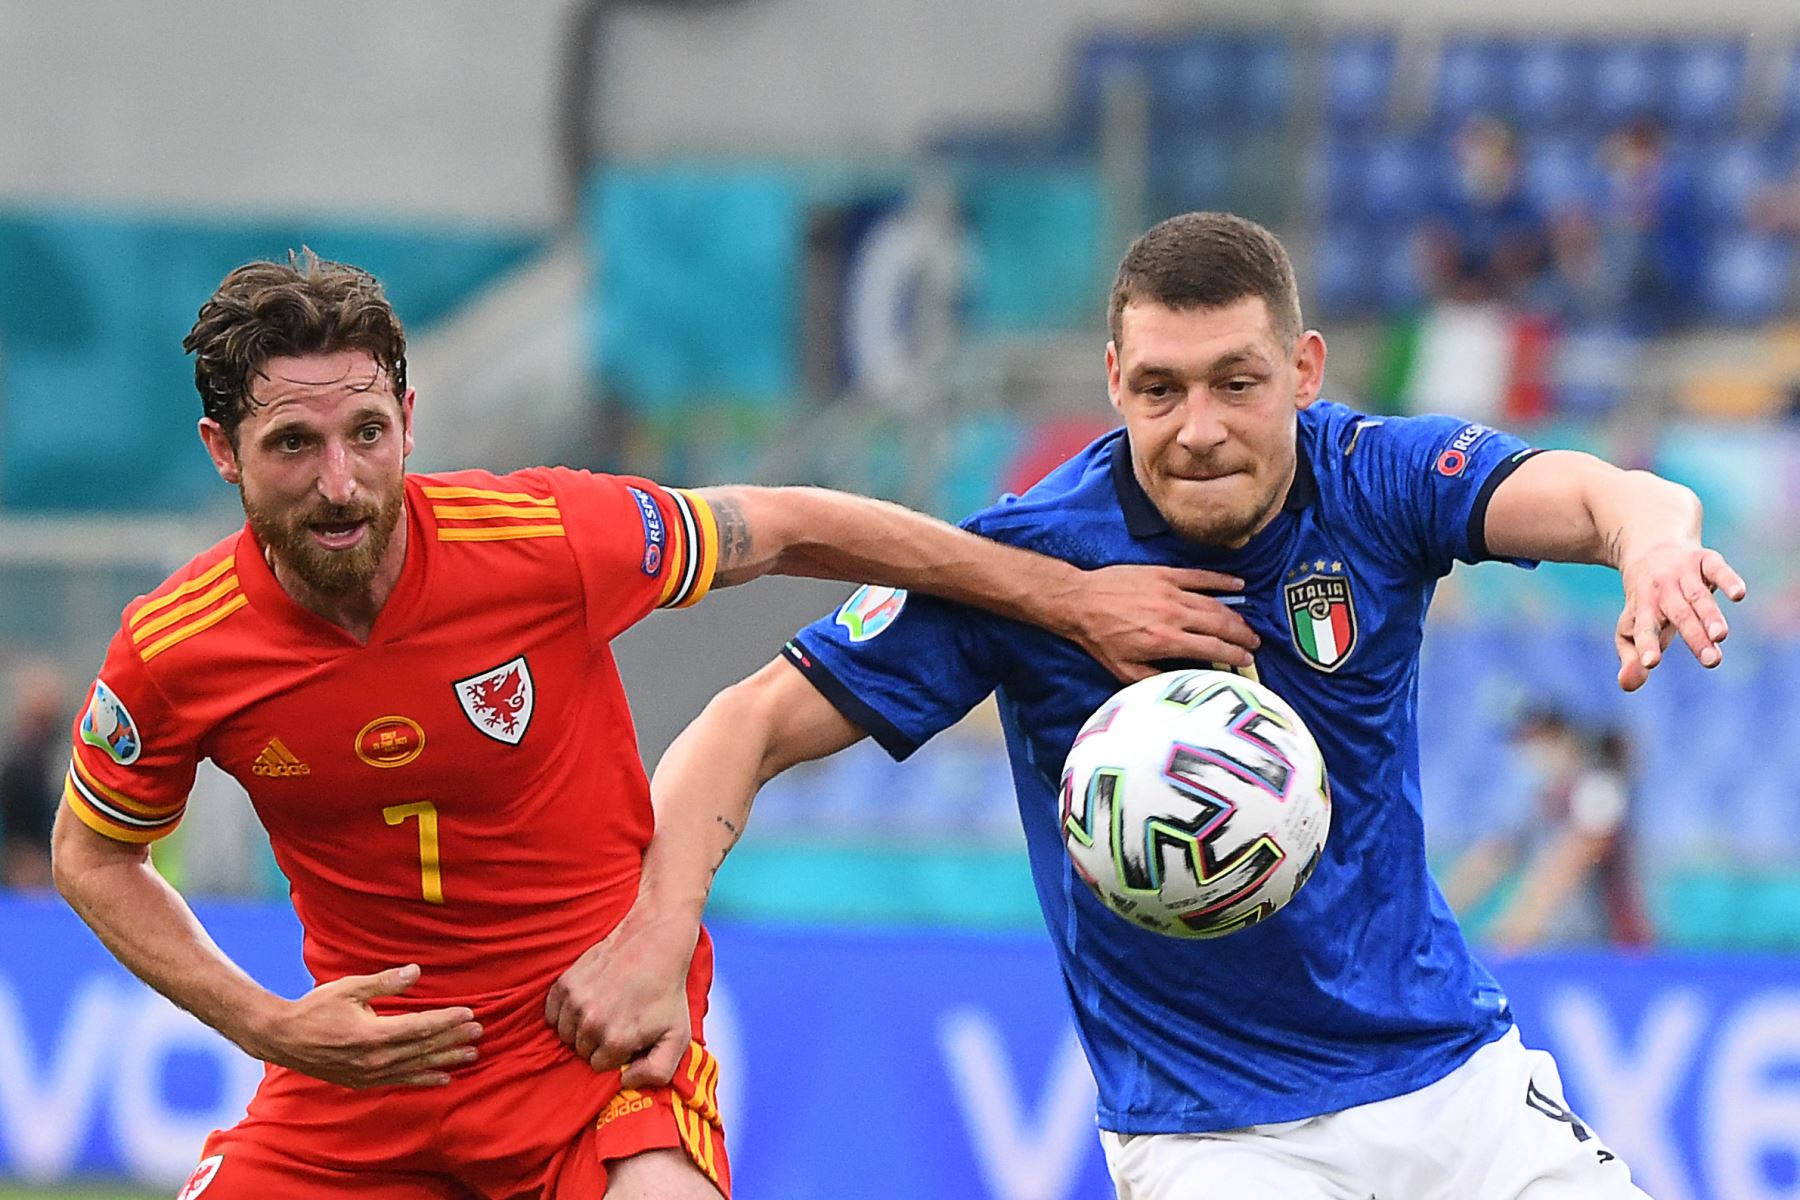 El delantero italiano Andrea Belotti (R) compite por el balón con el centrocampista de Gales Joe Allen durante el partido de fútbol del Grupo A de la UEFA EURO 2020 entre Italia y Gales en el Estadio Olímpico de Roma. Foto: AFP